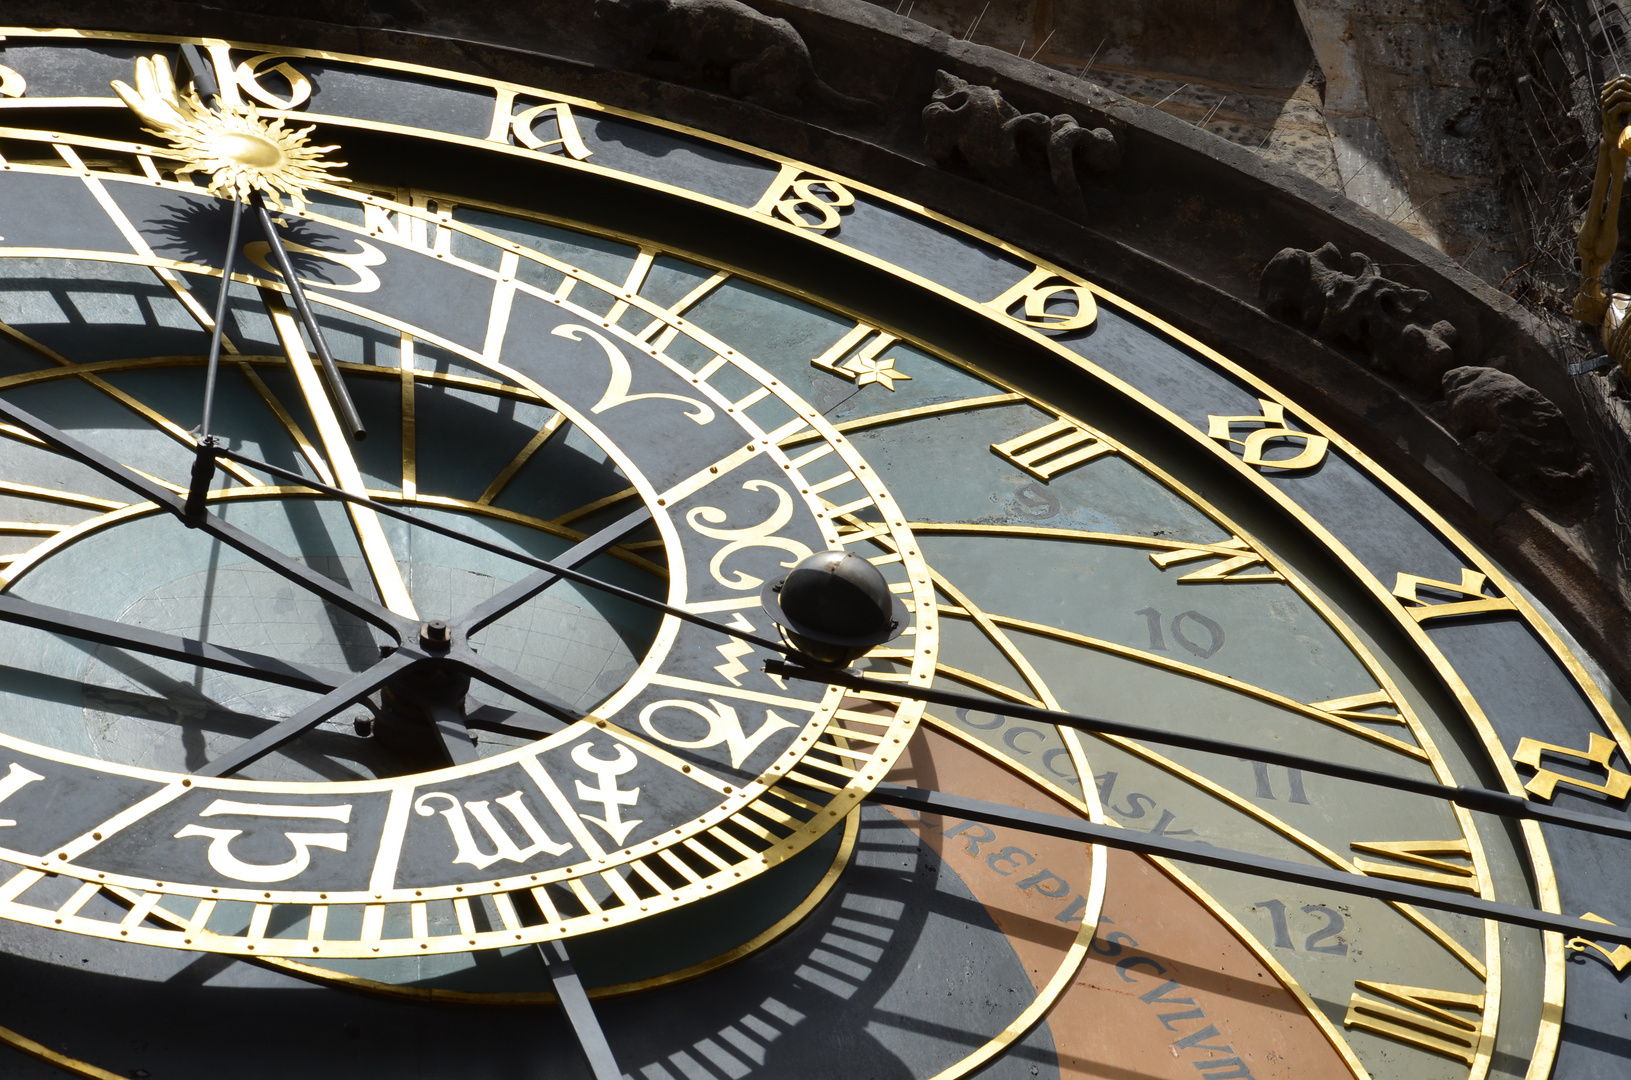 Prag - Astronomische Uhr